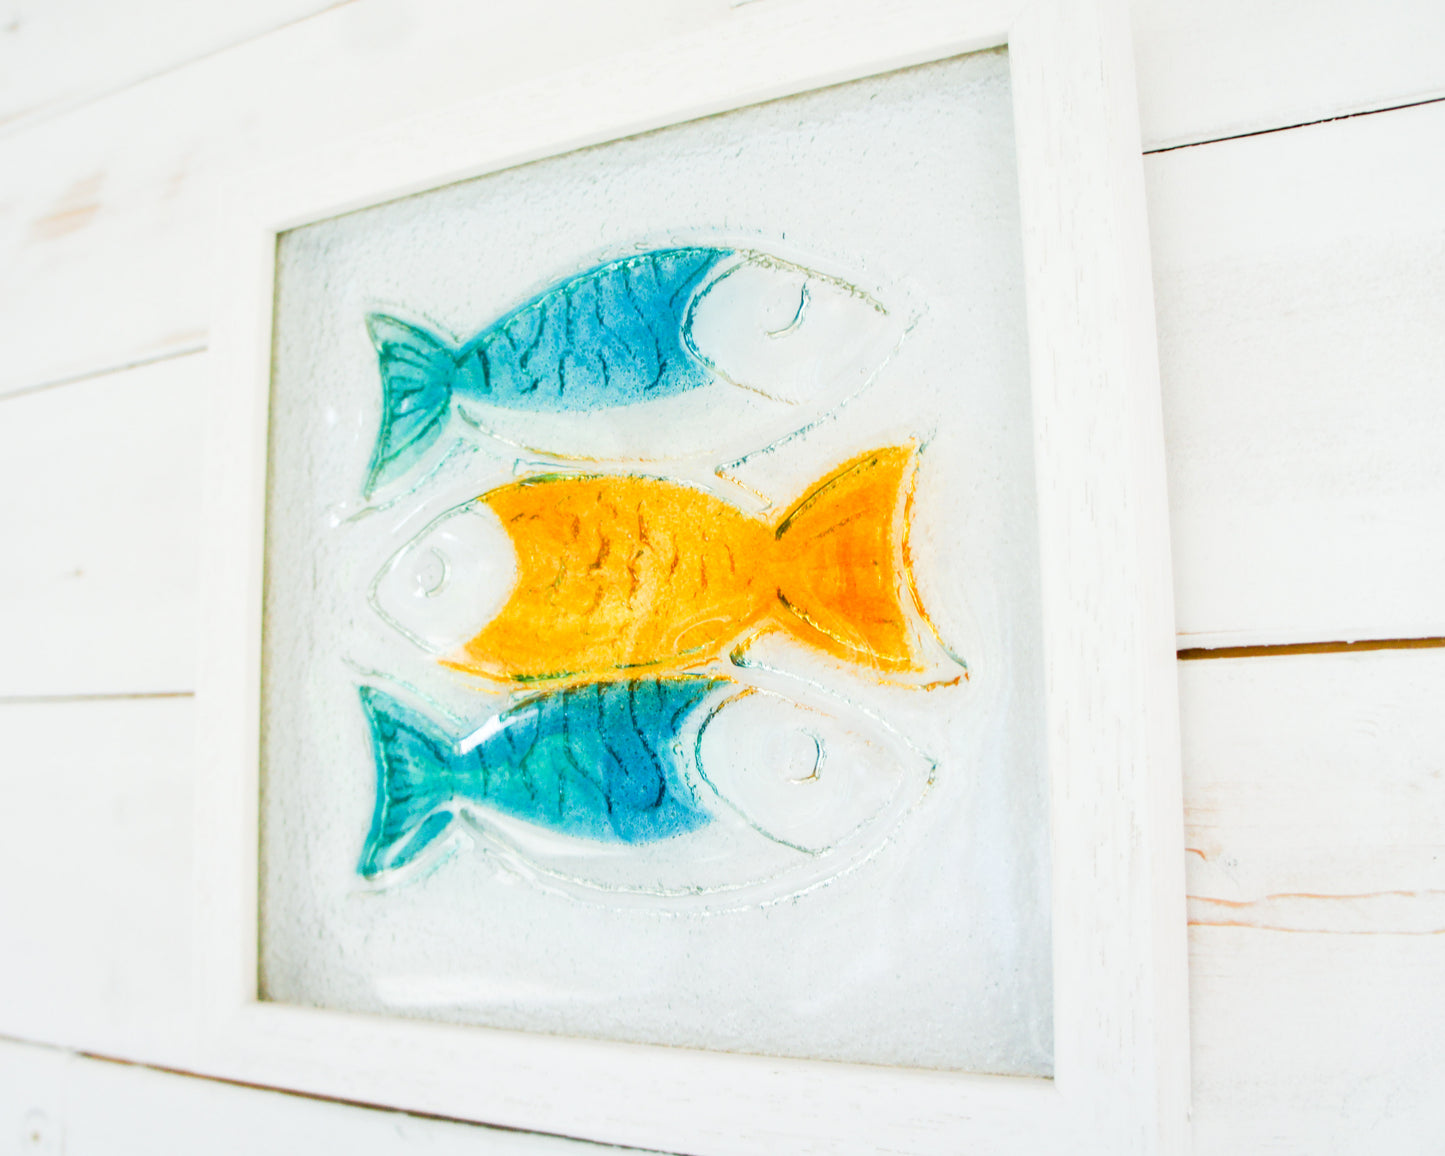 3 Fish Glass Art 25x25cm (10"x10") - Blue Orange Fish Glass Framed Picture - Fish Coastal Wall Art